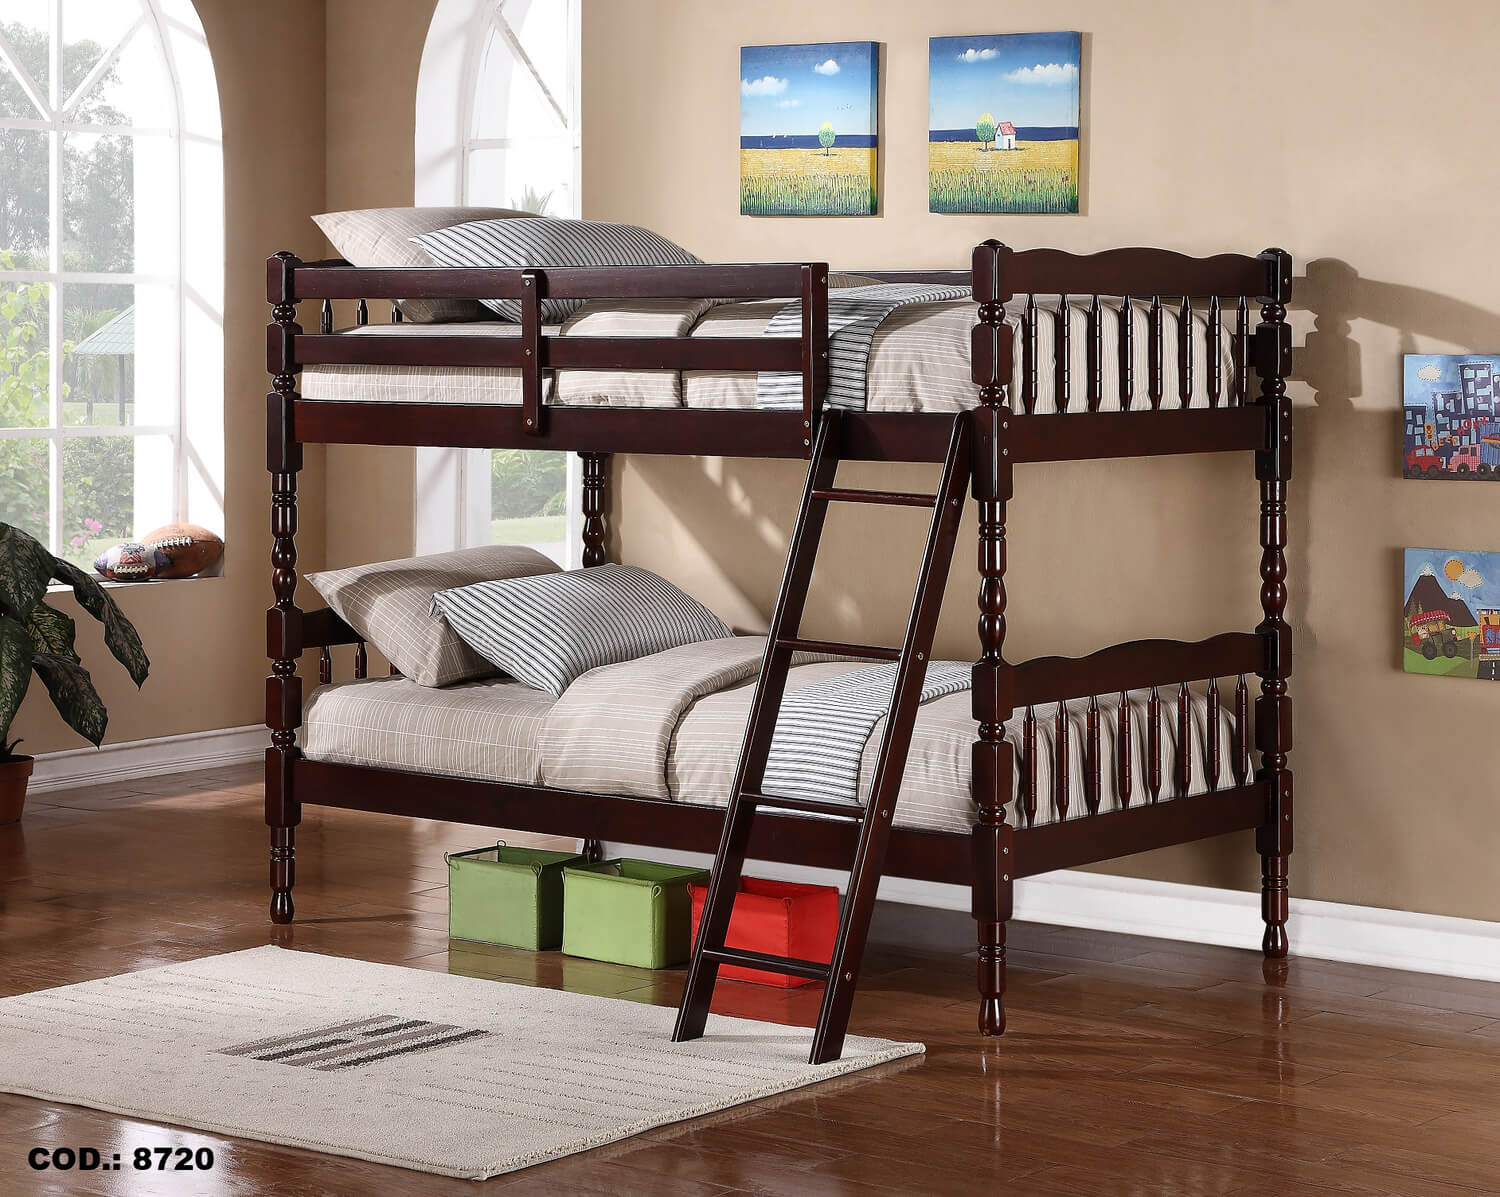 Mẫu thiết kế giường tầng đẹp giá rẻ được làm từ gỗ 2